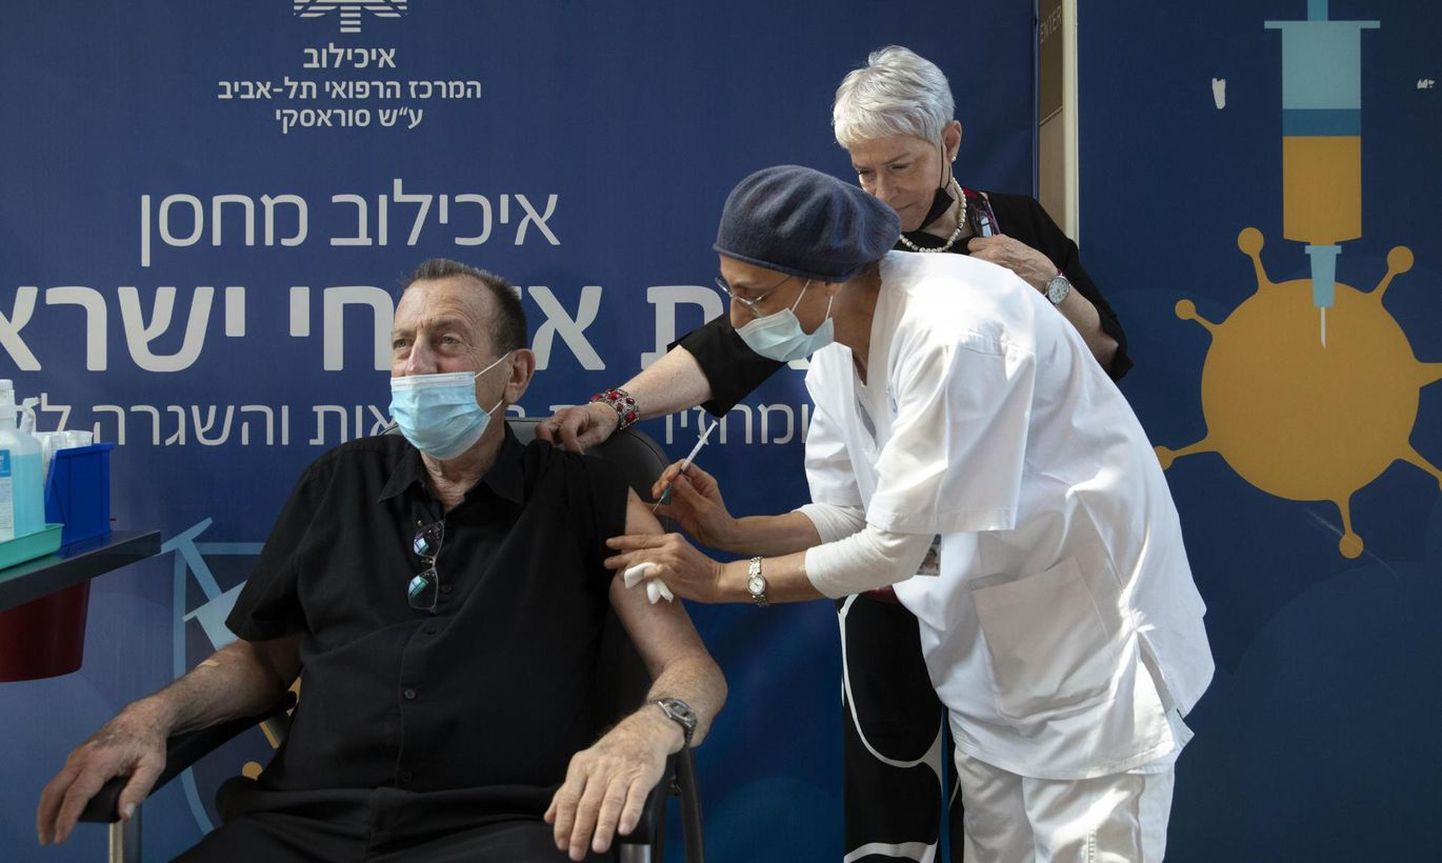 Мэр Тель-Авива Рон Хулдаин прошел ревакцинацию вакциной Pfizer. Так в Израиле уже 1 августа началось введение третьей дозы, которую рекомендуют людям старше 60 лет.